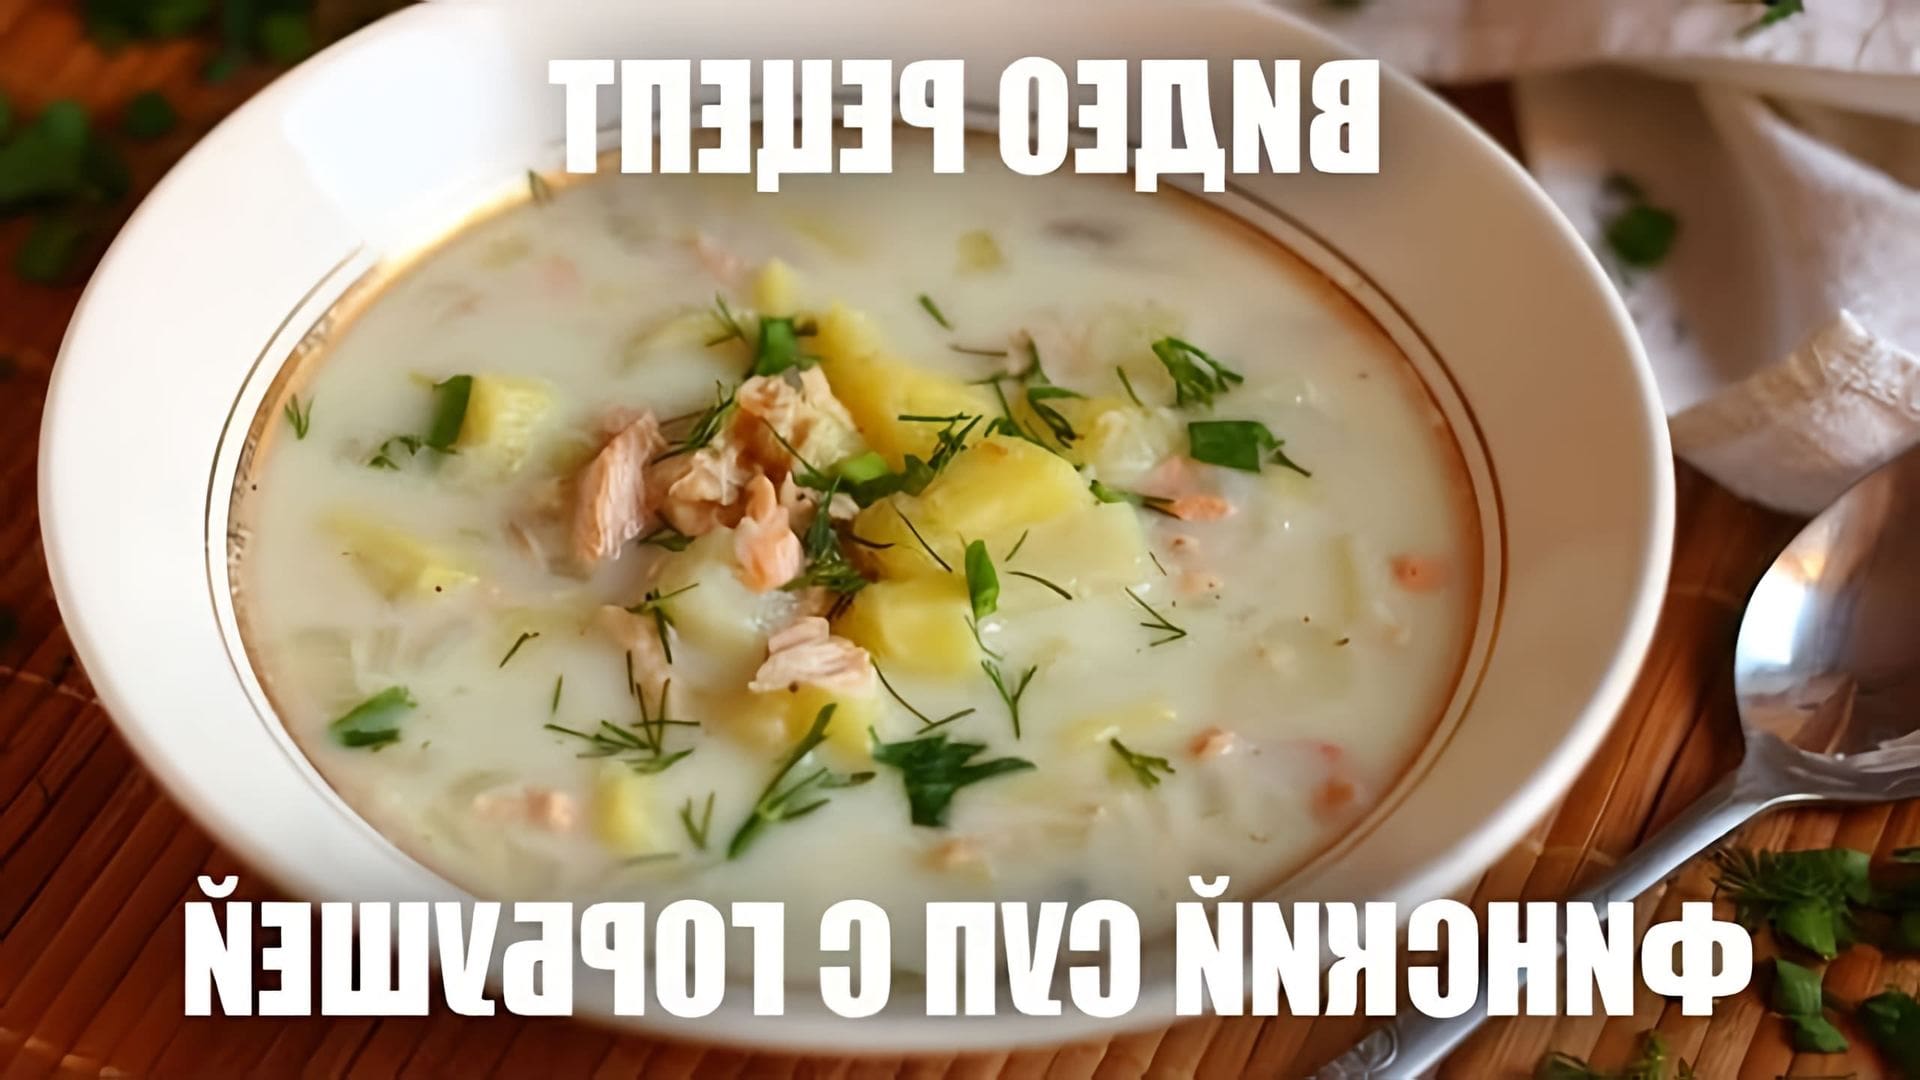 В этом видео демонстрируется рецепт финского супа с горбушей